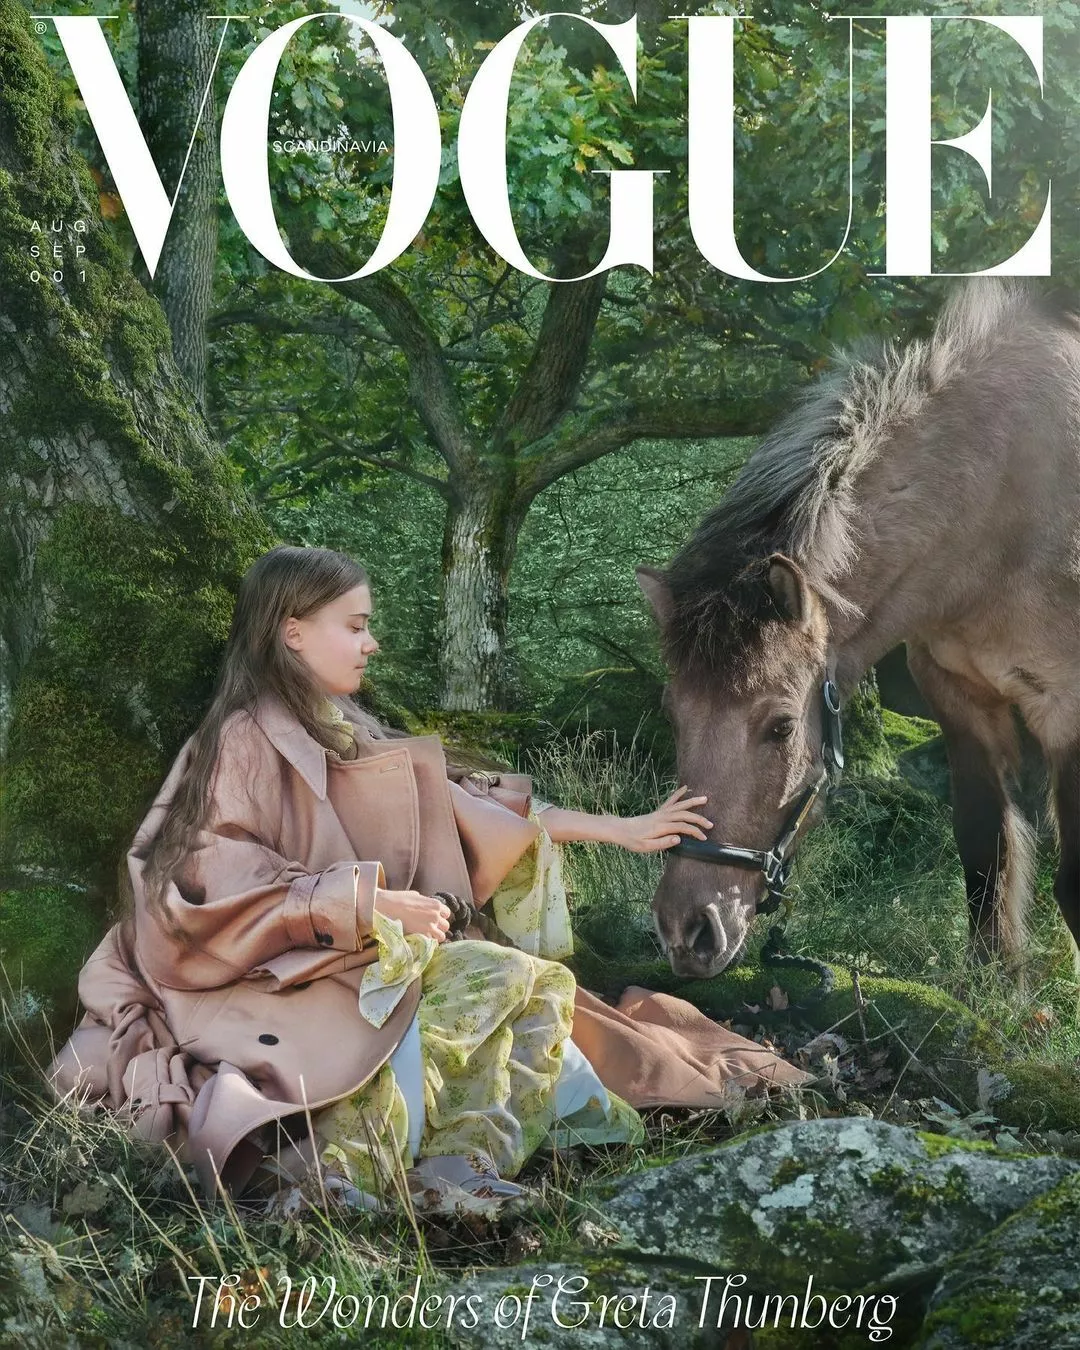 Грета Тунберг со своей лошадью на обложке Vogue Scandinavia